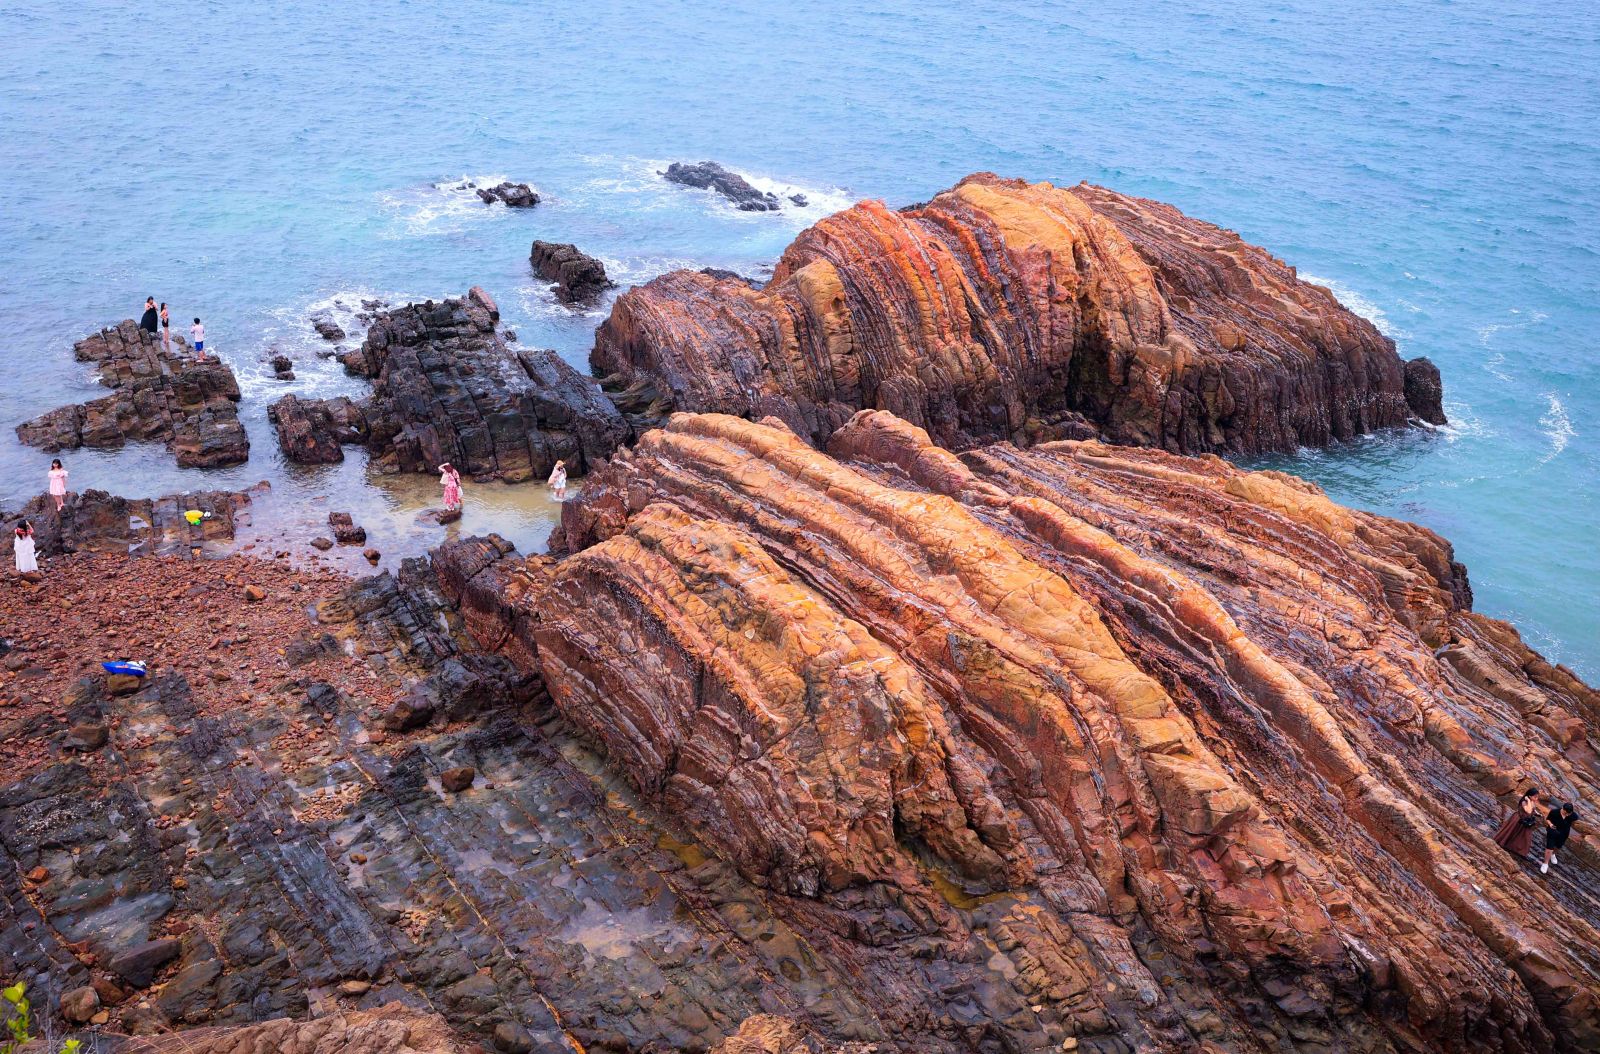 … và khi nước biển xâm thực, những lớp đá trầm tích bị bào mòn qua thời gian tạo nên hình thù cũng như màu sắc vân đá đẹp và độc đáo.